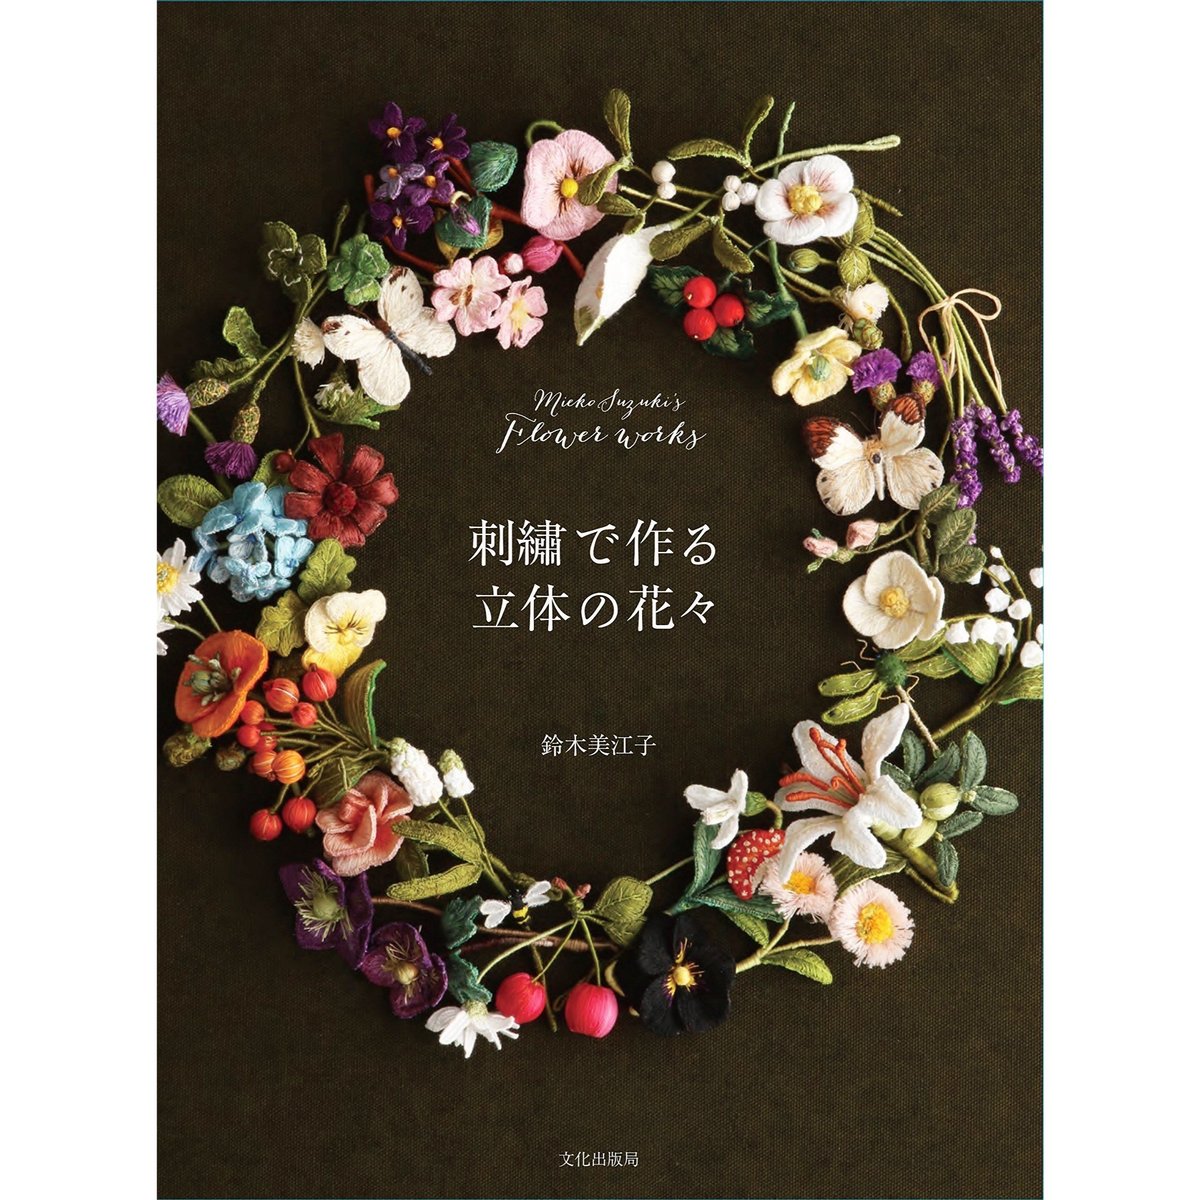 刺繍で作る立体の花々 Mieko Suzuki's Flower works | boutiq...